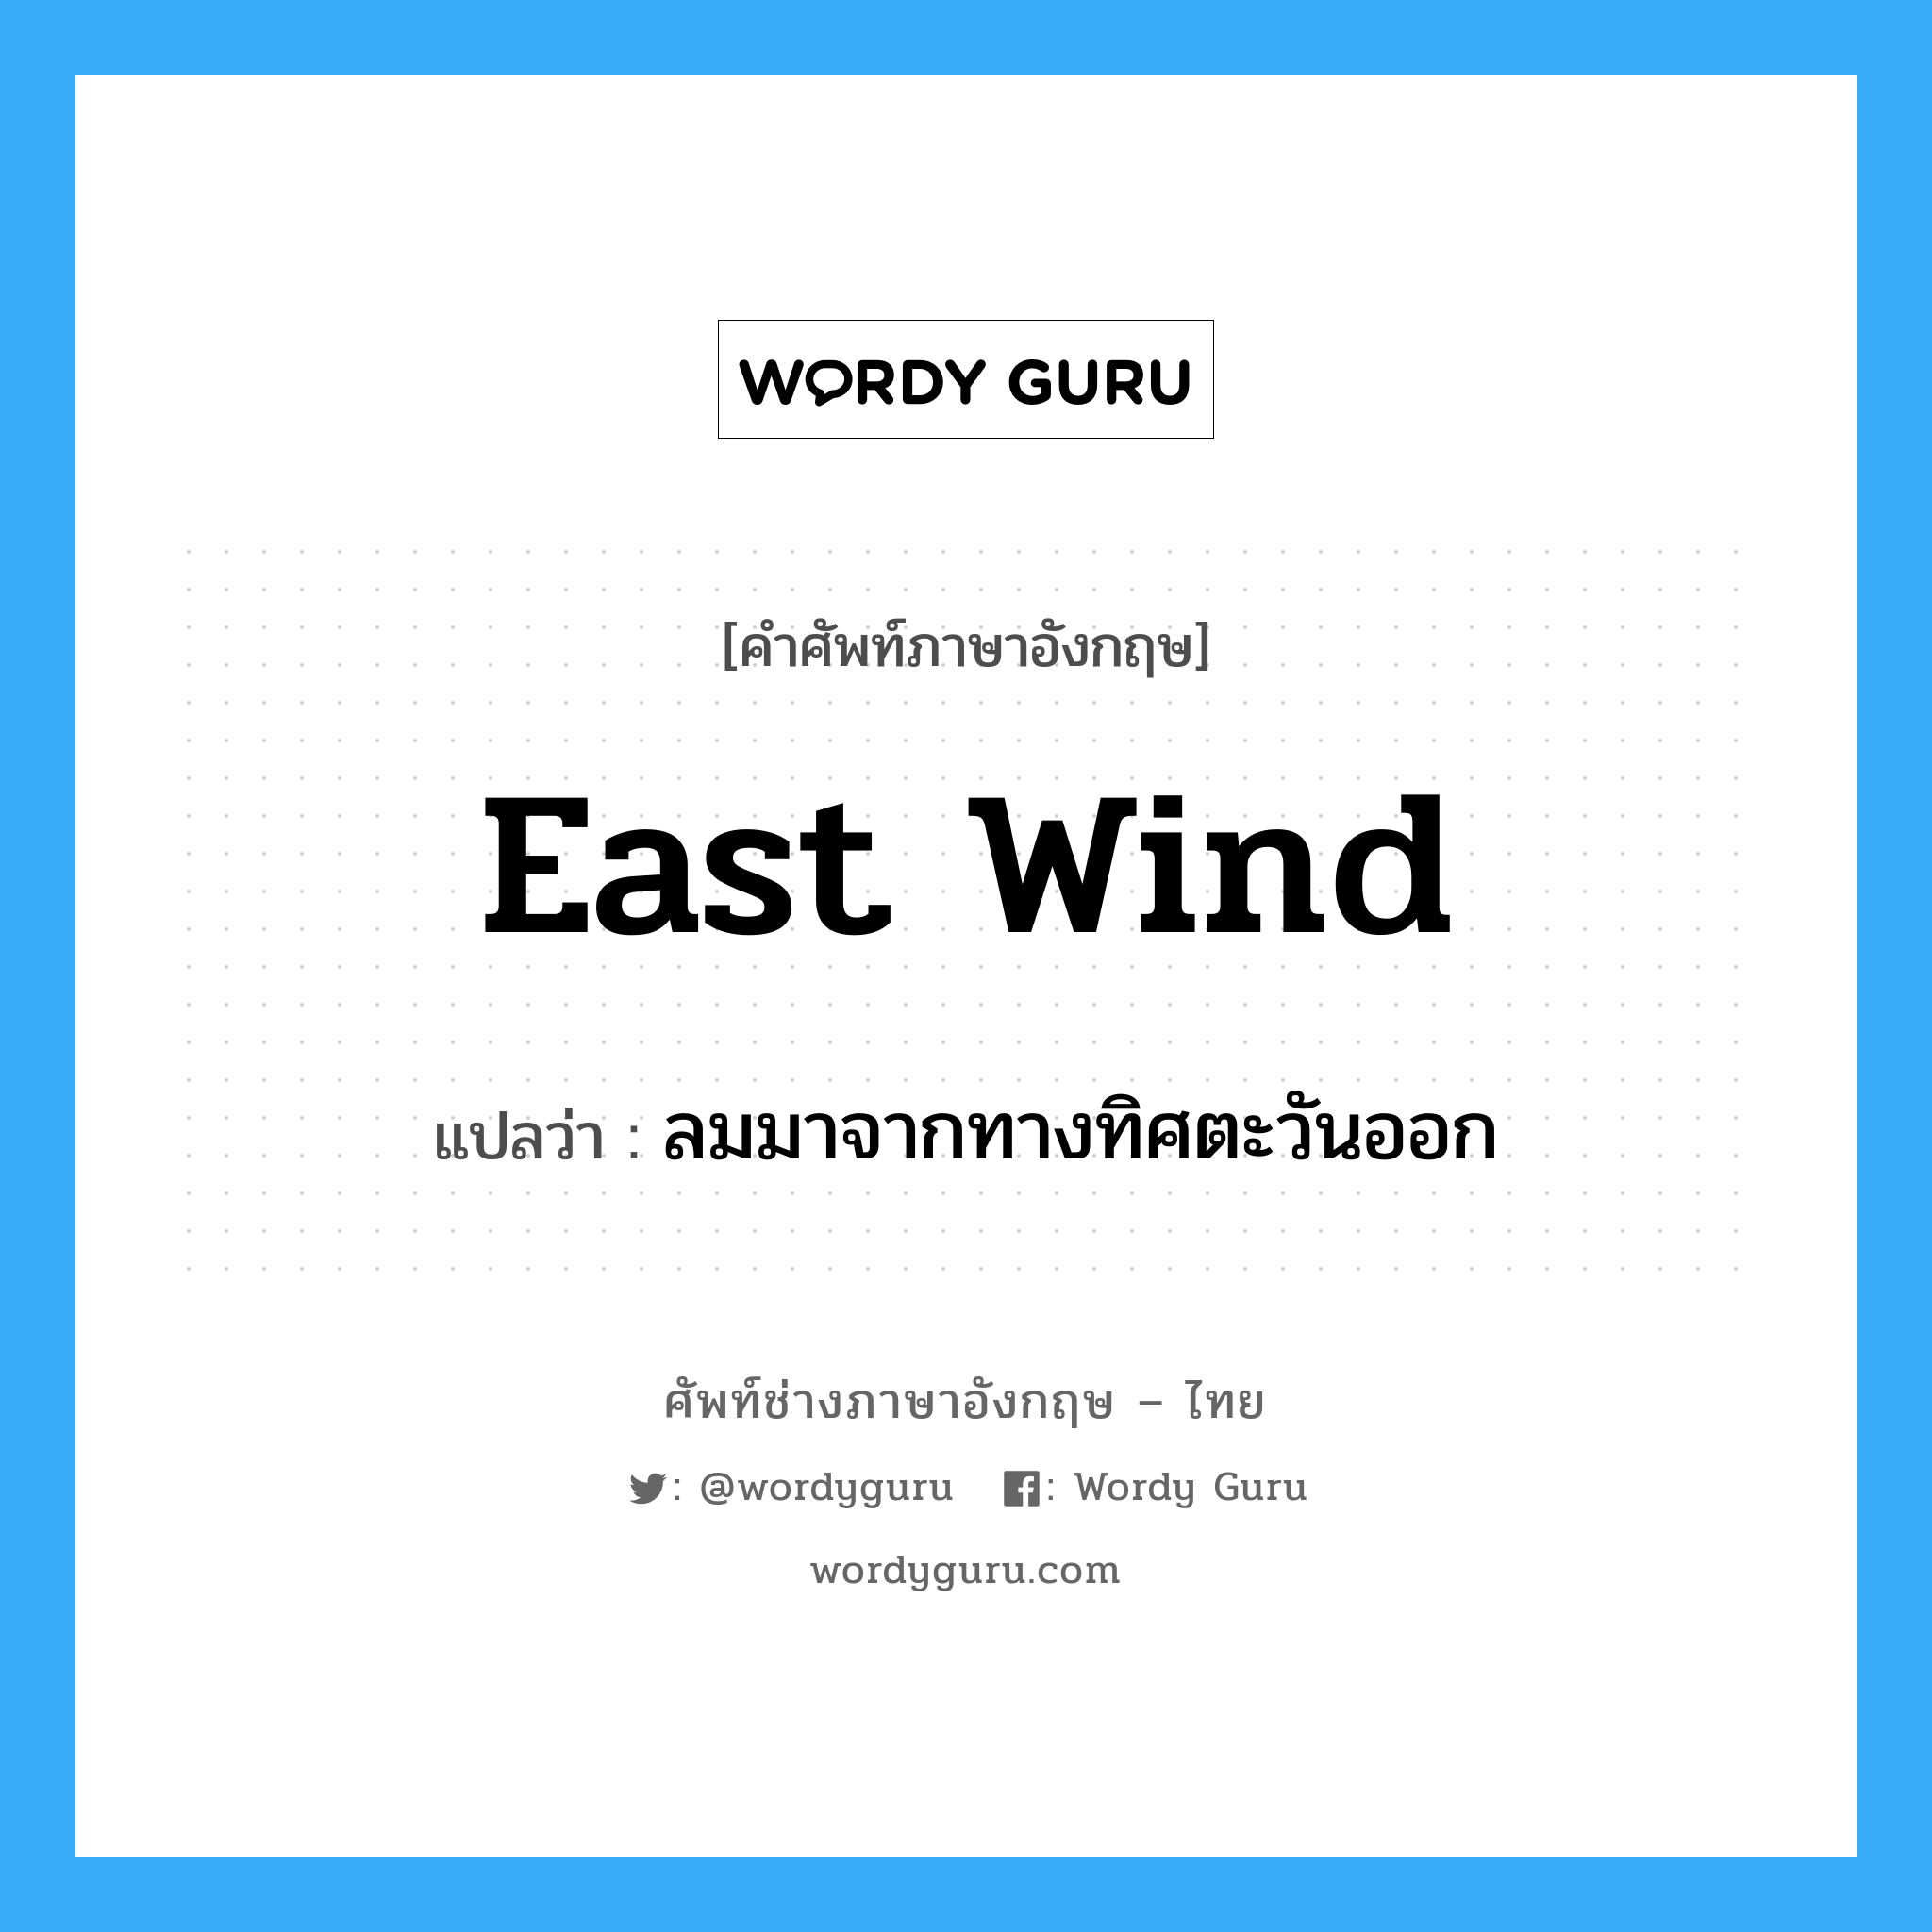 east wind แปลว่า?, คำศัพท์ช่างภาษาอังกฤษ - ไทย east wind คำศัพท์ภาษาอังกฤษ east wind แปลว่า ลมมาจากทางทิศตะวันออก